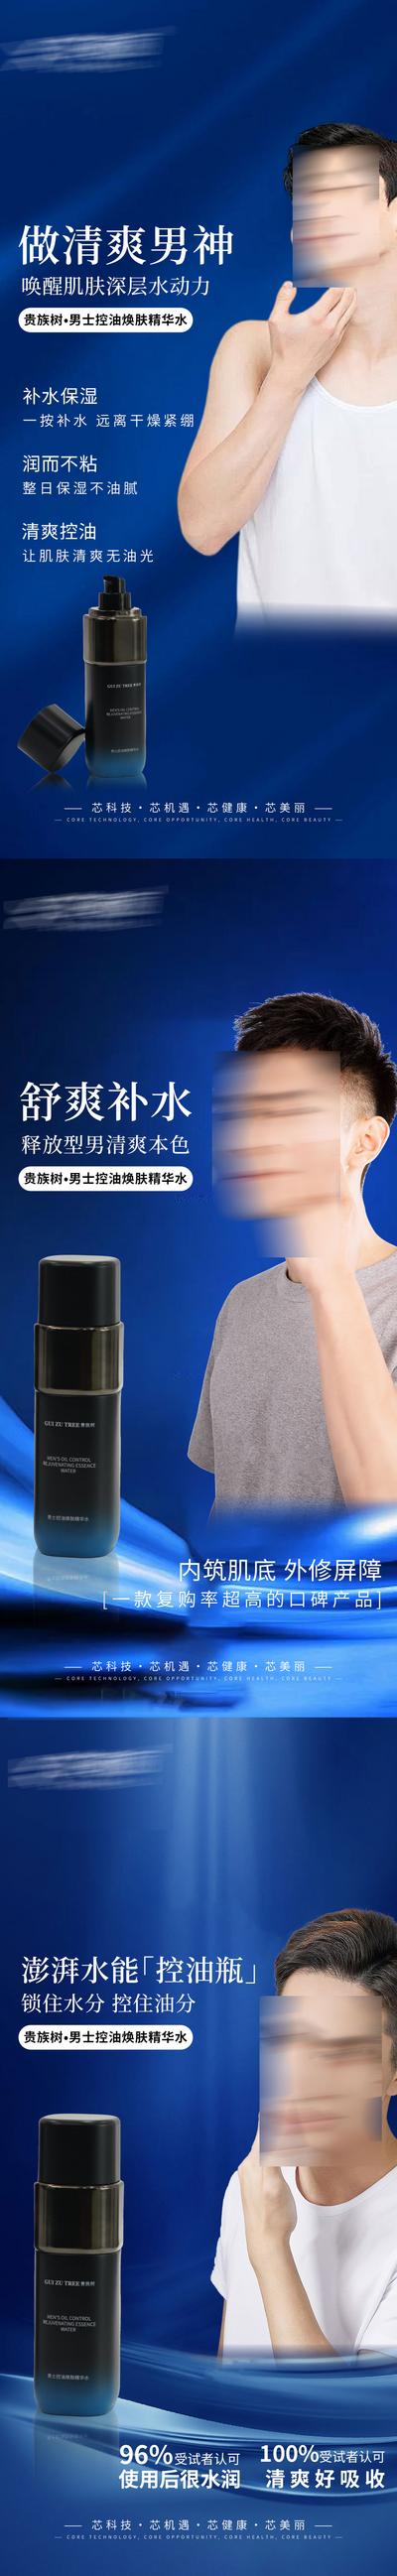 南门网 广告 海报 微商 护肤品 精华水乳 宣传 补水 嫩肤 水乳 爽肤水